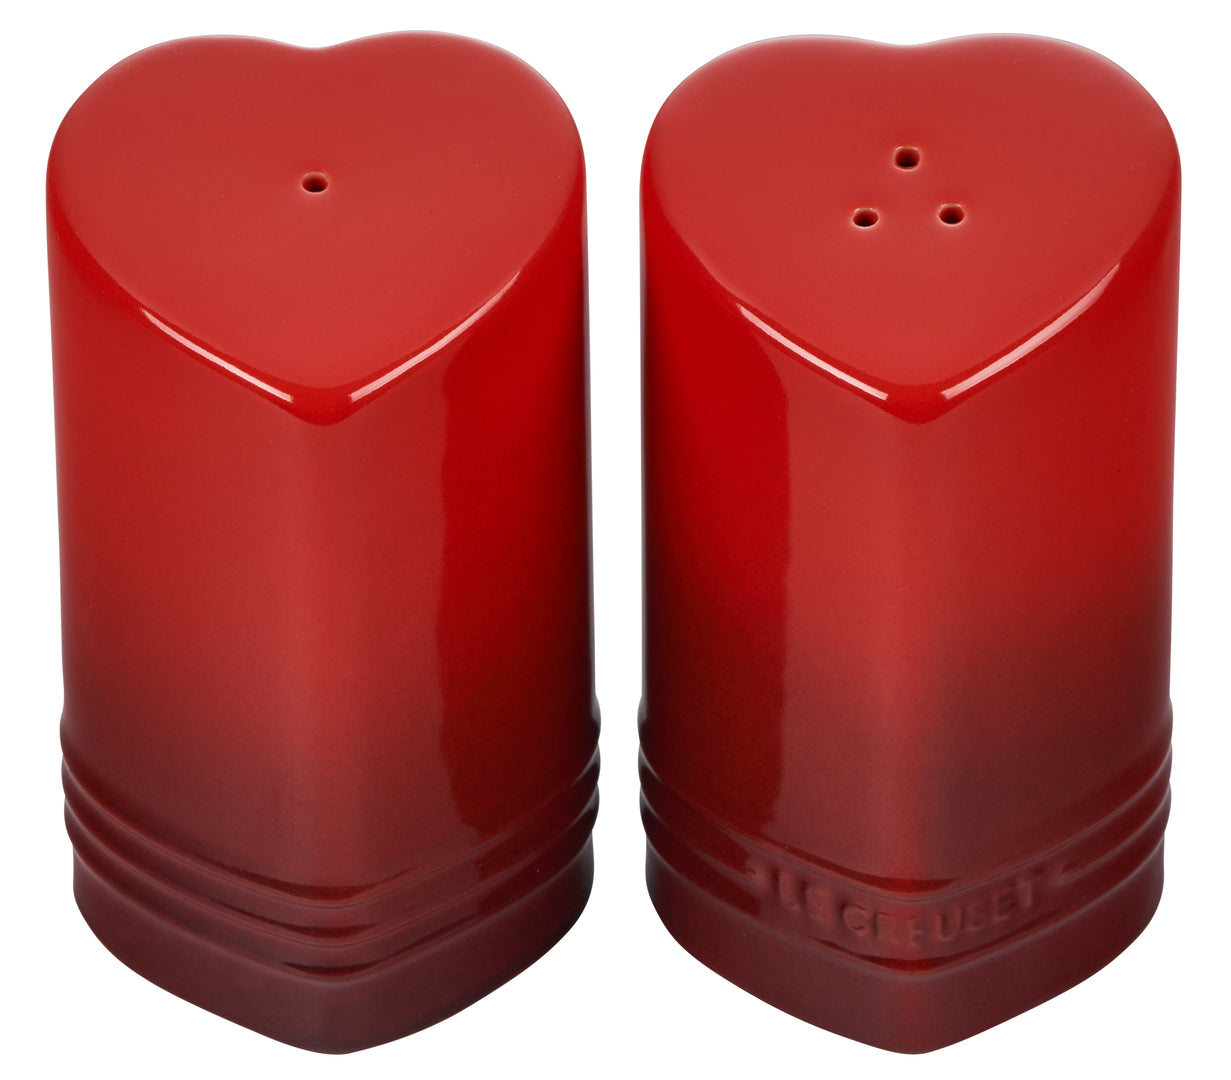 Le Creuset Figural Heart Salt & Pepper Shaker Set of 2 - Cerise